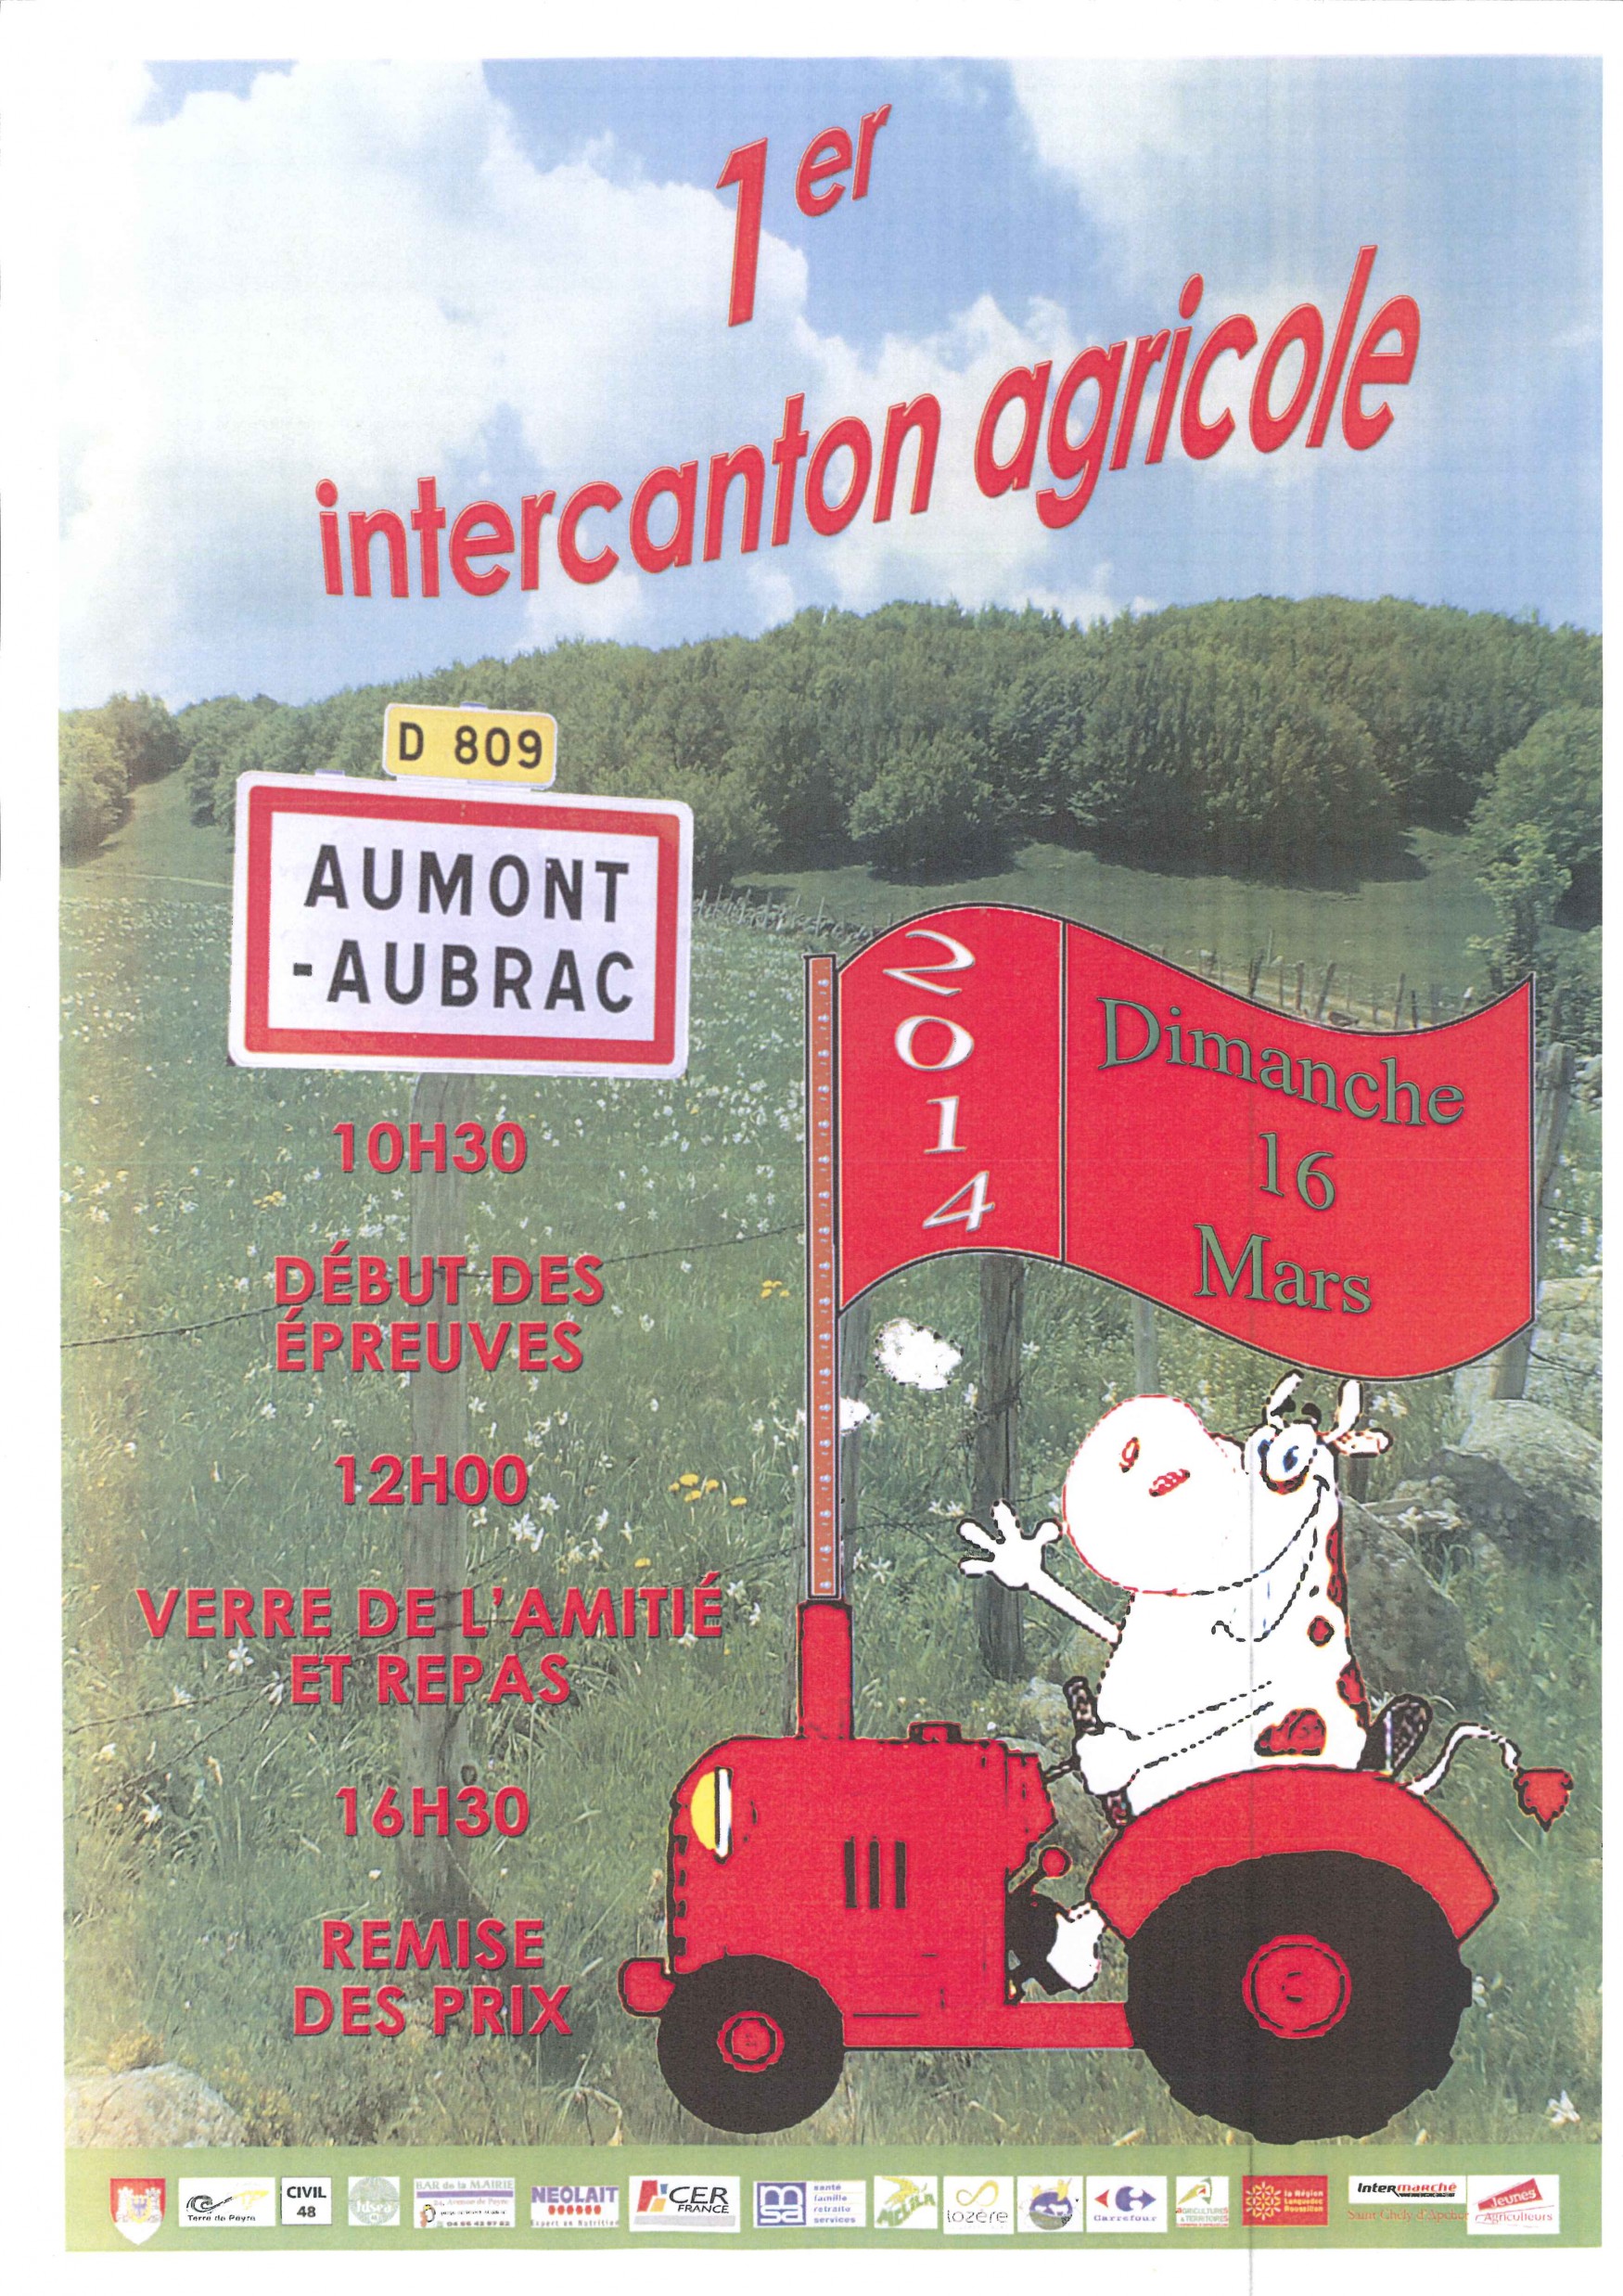 Premier Intercanton agricole à Aumont-Aubrac